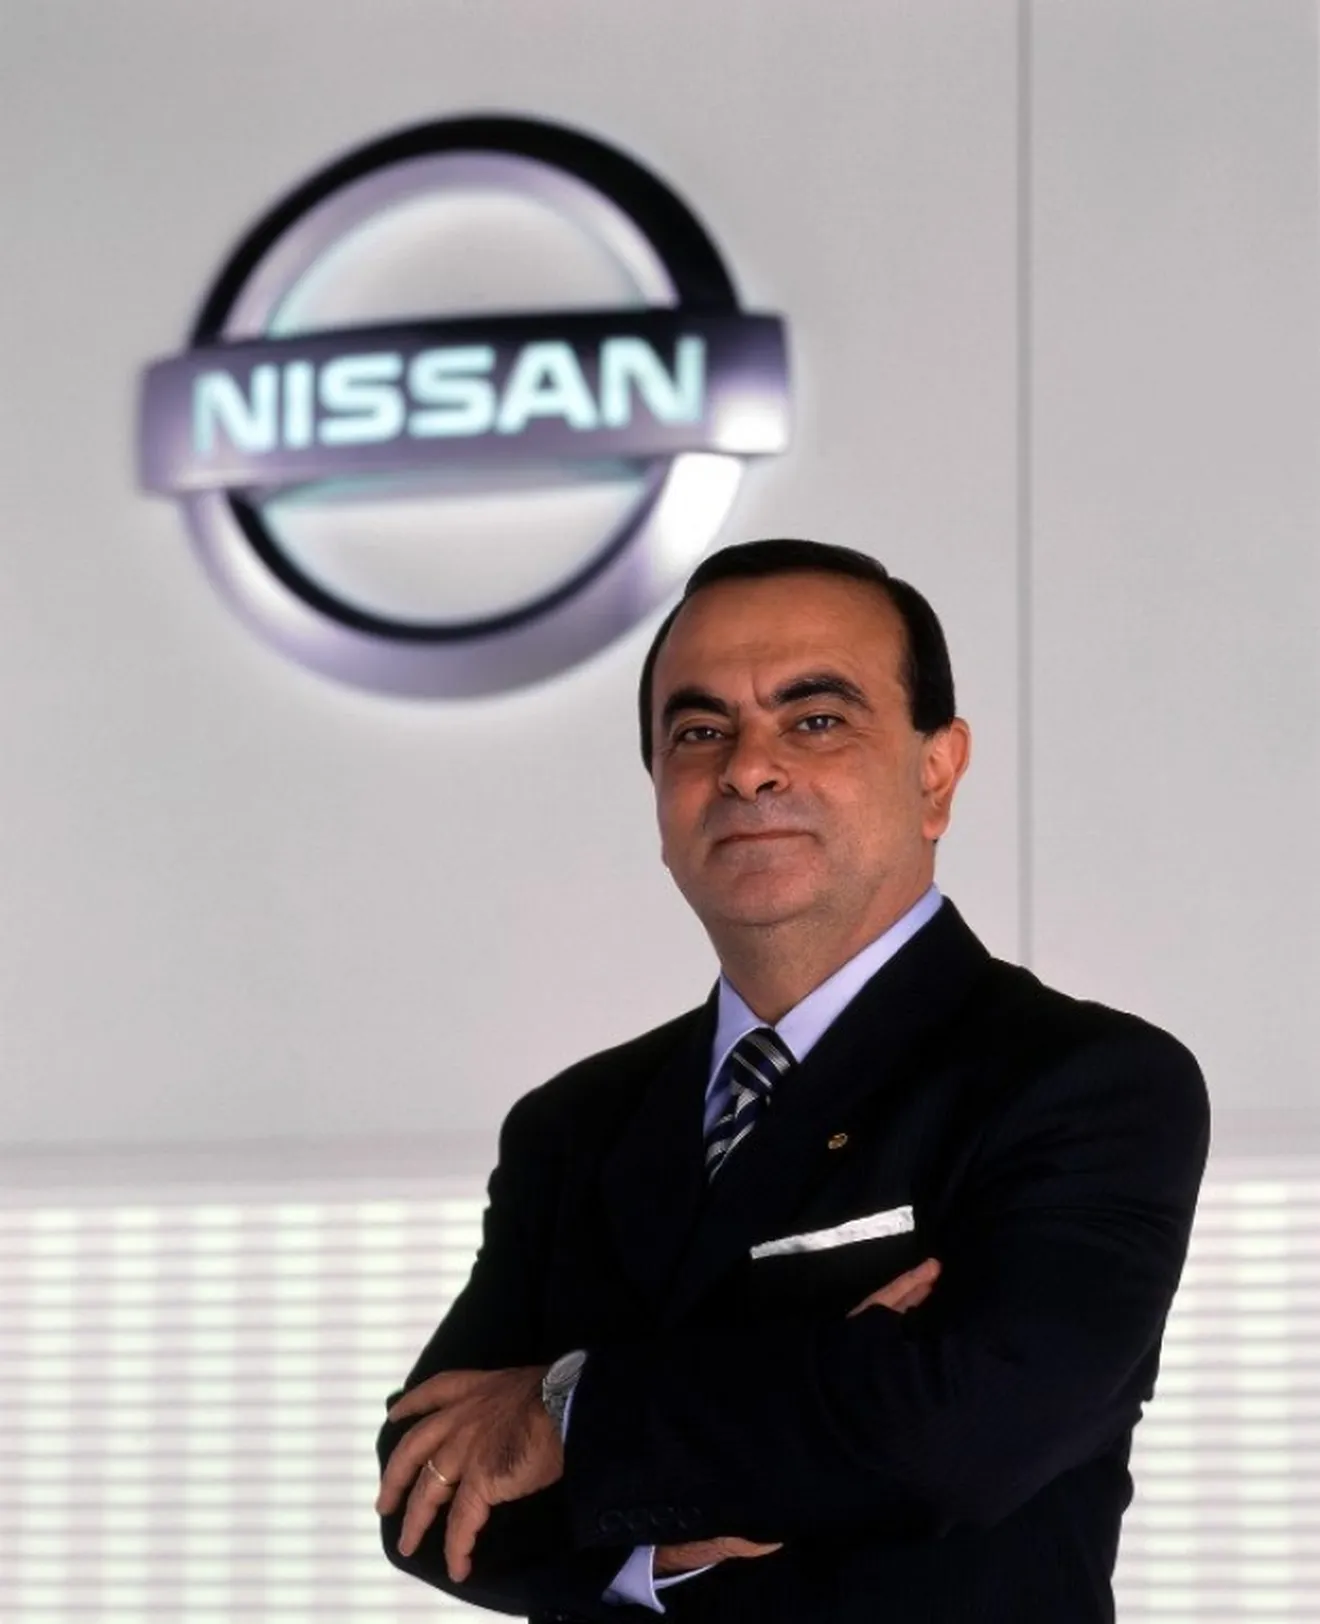 Es oficial: la Alianza Renault Nissan Mitsubishi fue líder mundial de ventas en 2017